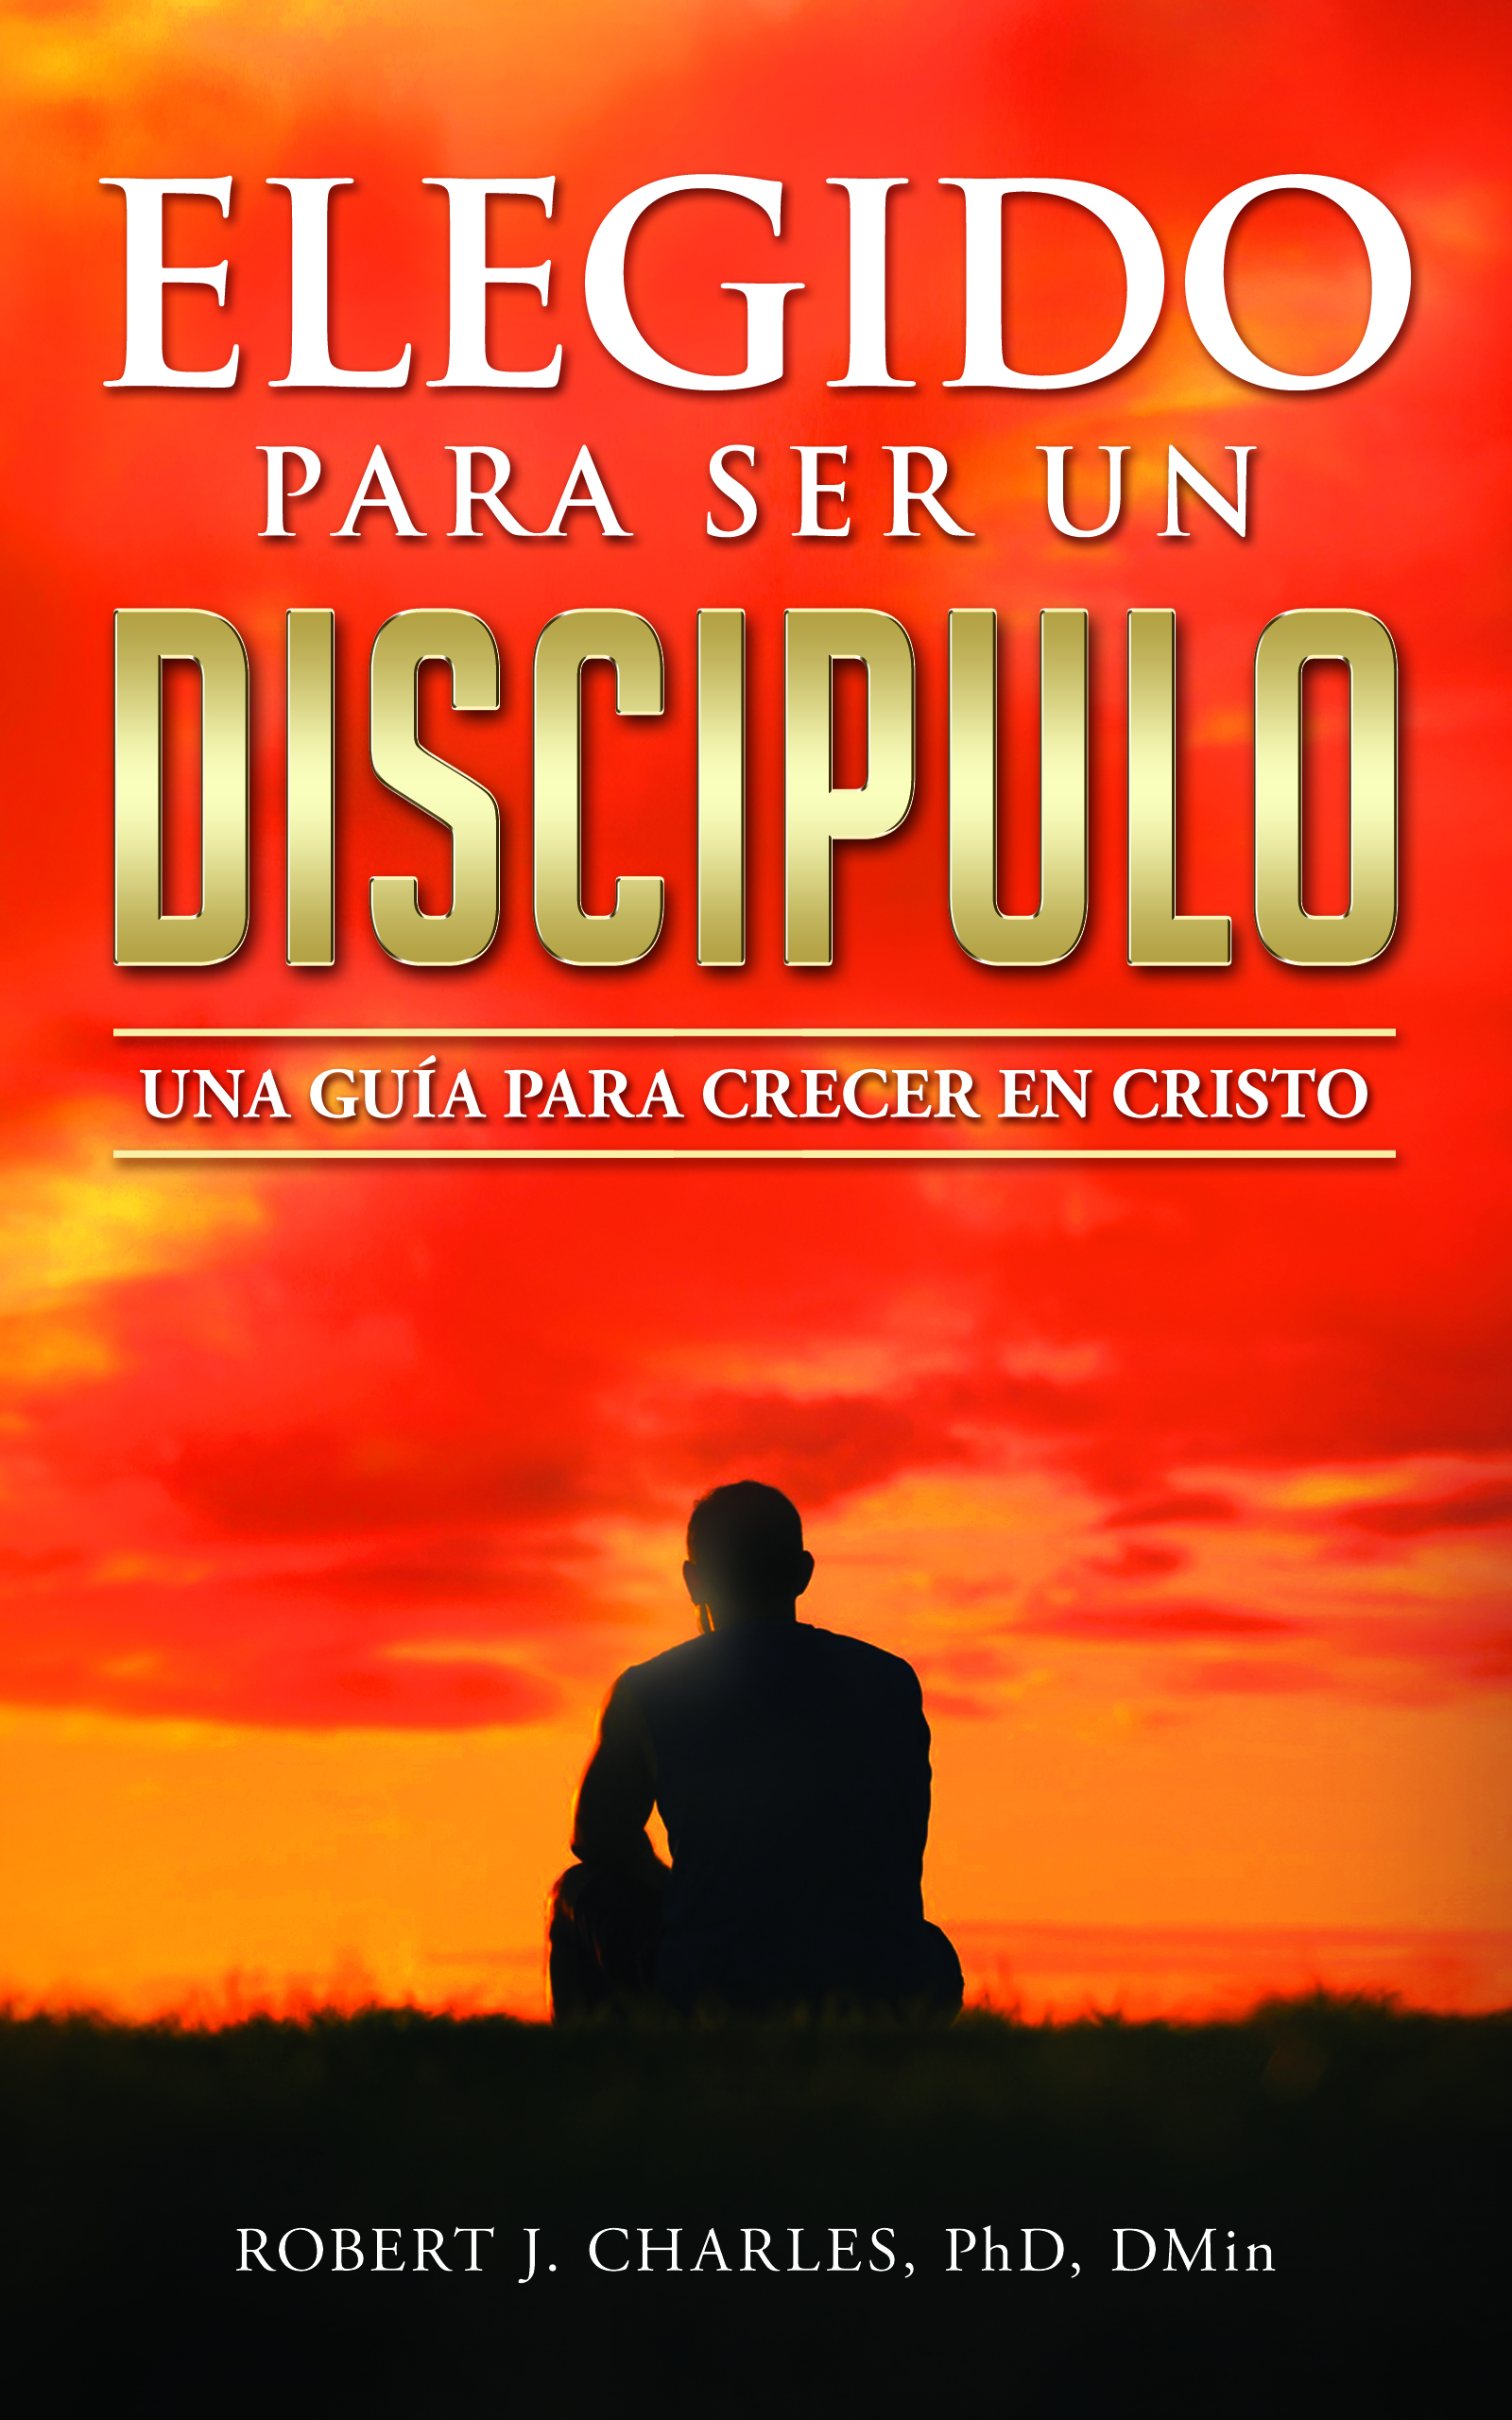 FREE: Elegido Para Ser Un Discípulo by Robert J. Charles